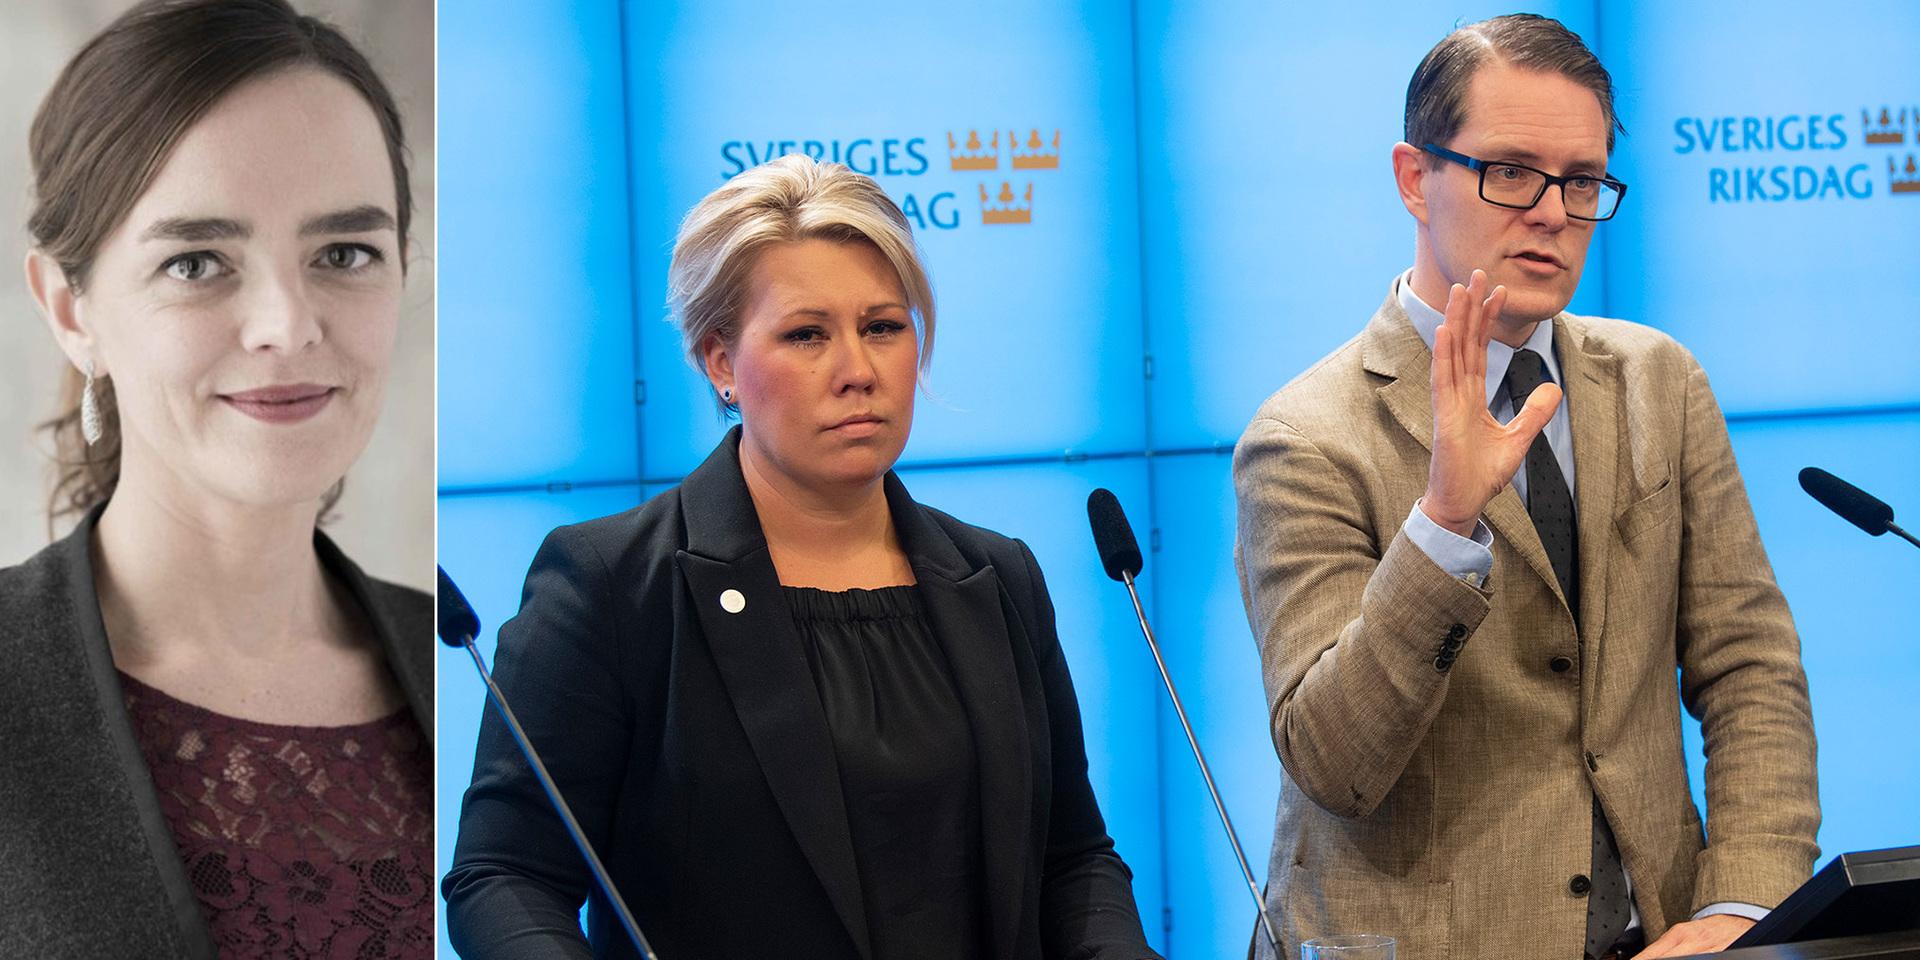 Energipolitiska talespersonerna Camilla Brodin (KD) och Lars Hjälmered (M) meddelade i tisdags att de lämnar energiöverenskommelsen som slöts mellan S, MP, C, M och KD i juni 2016. 